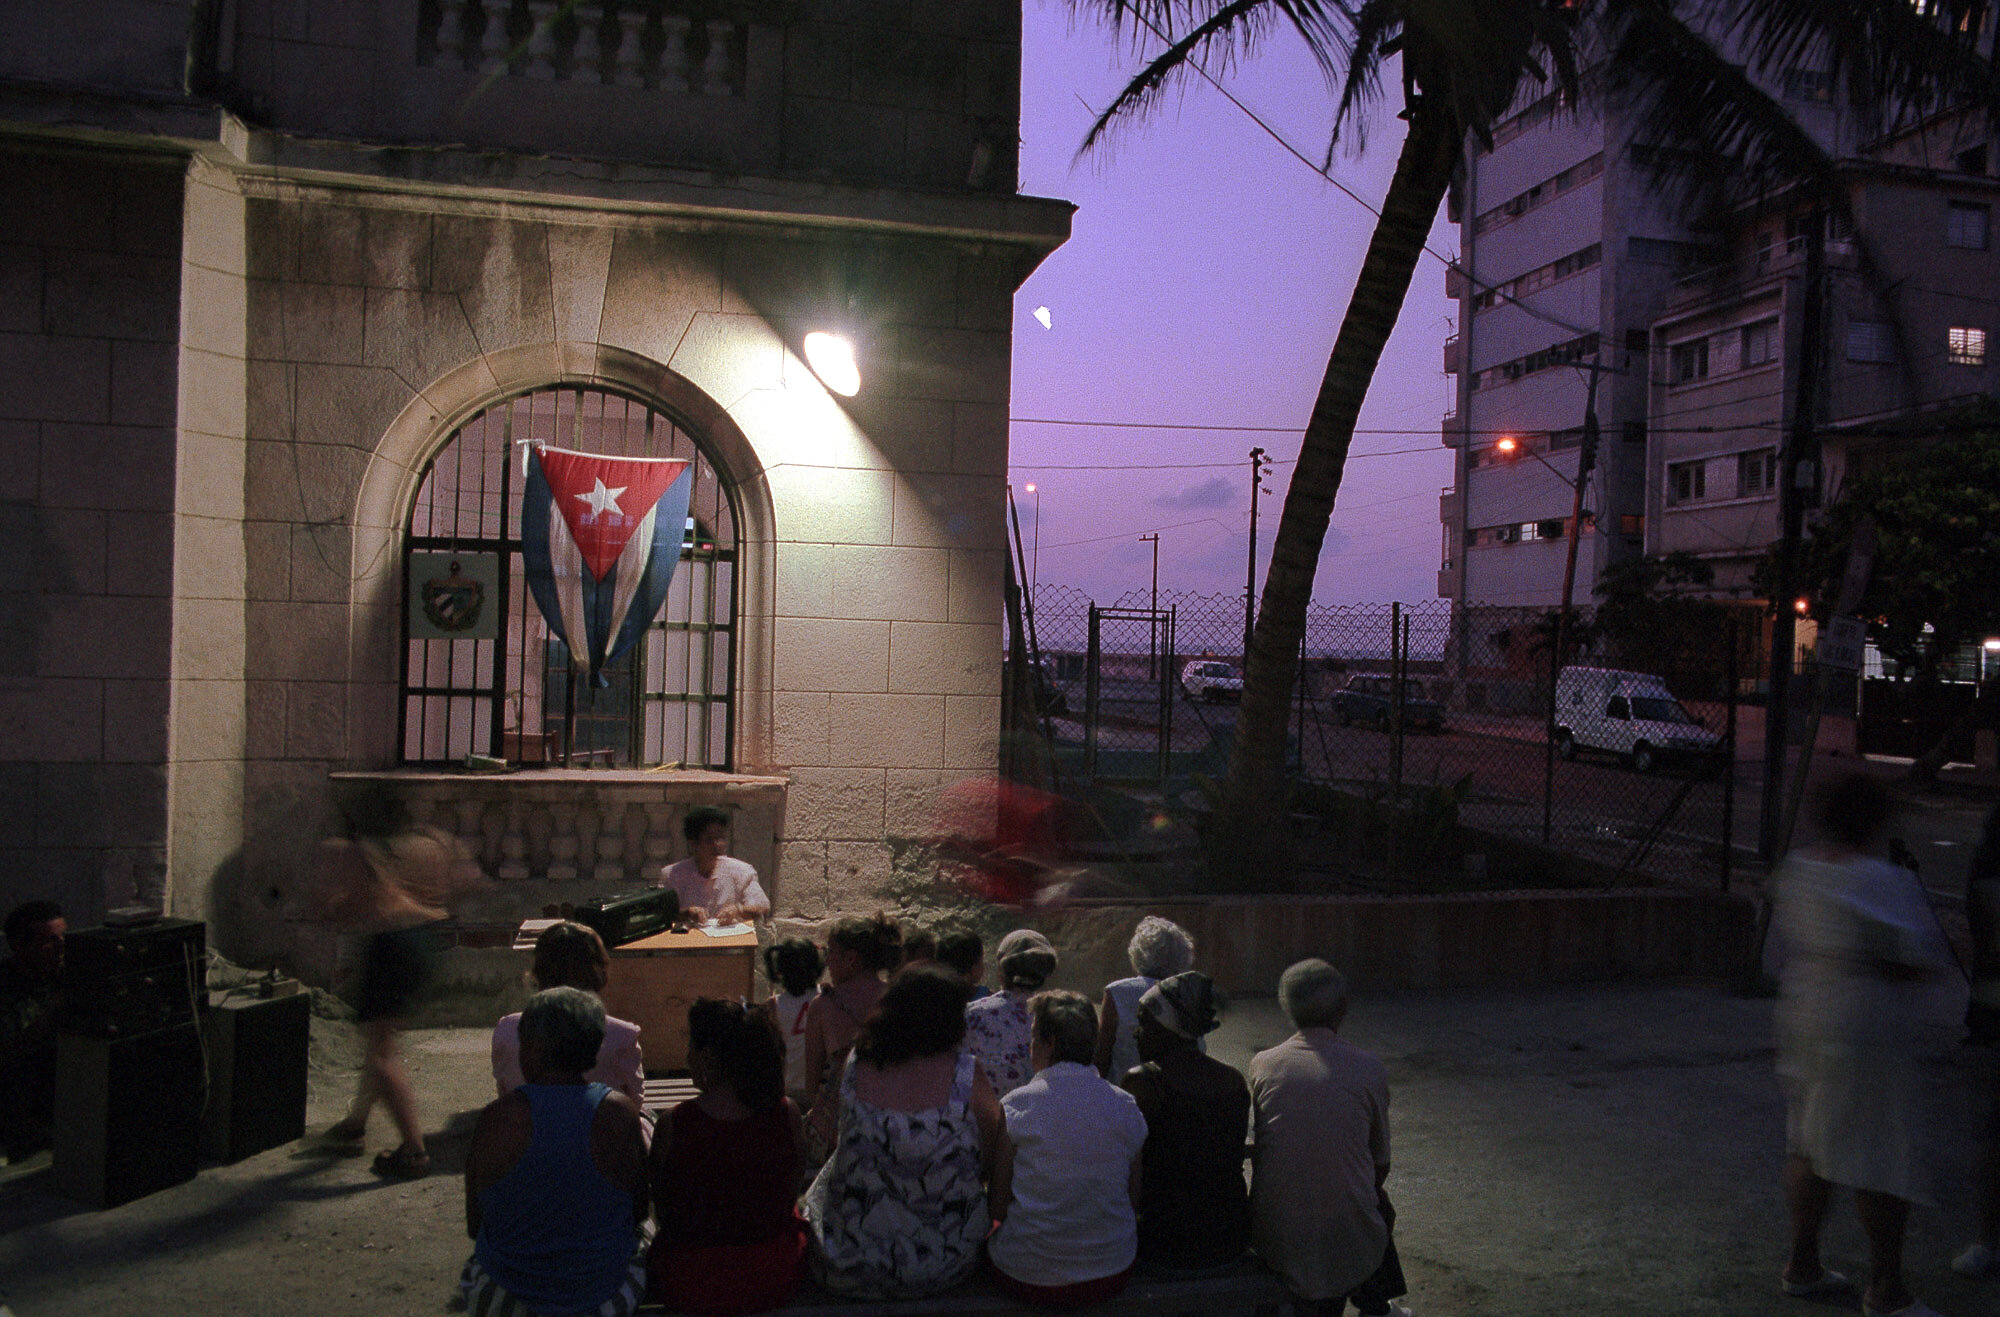  CDR assembly (Rendición de cuenta) in Vedado, Havana, 1999.                       